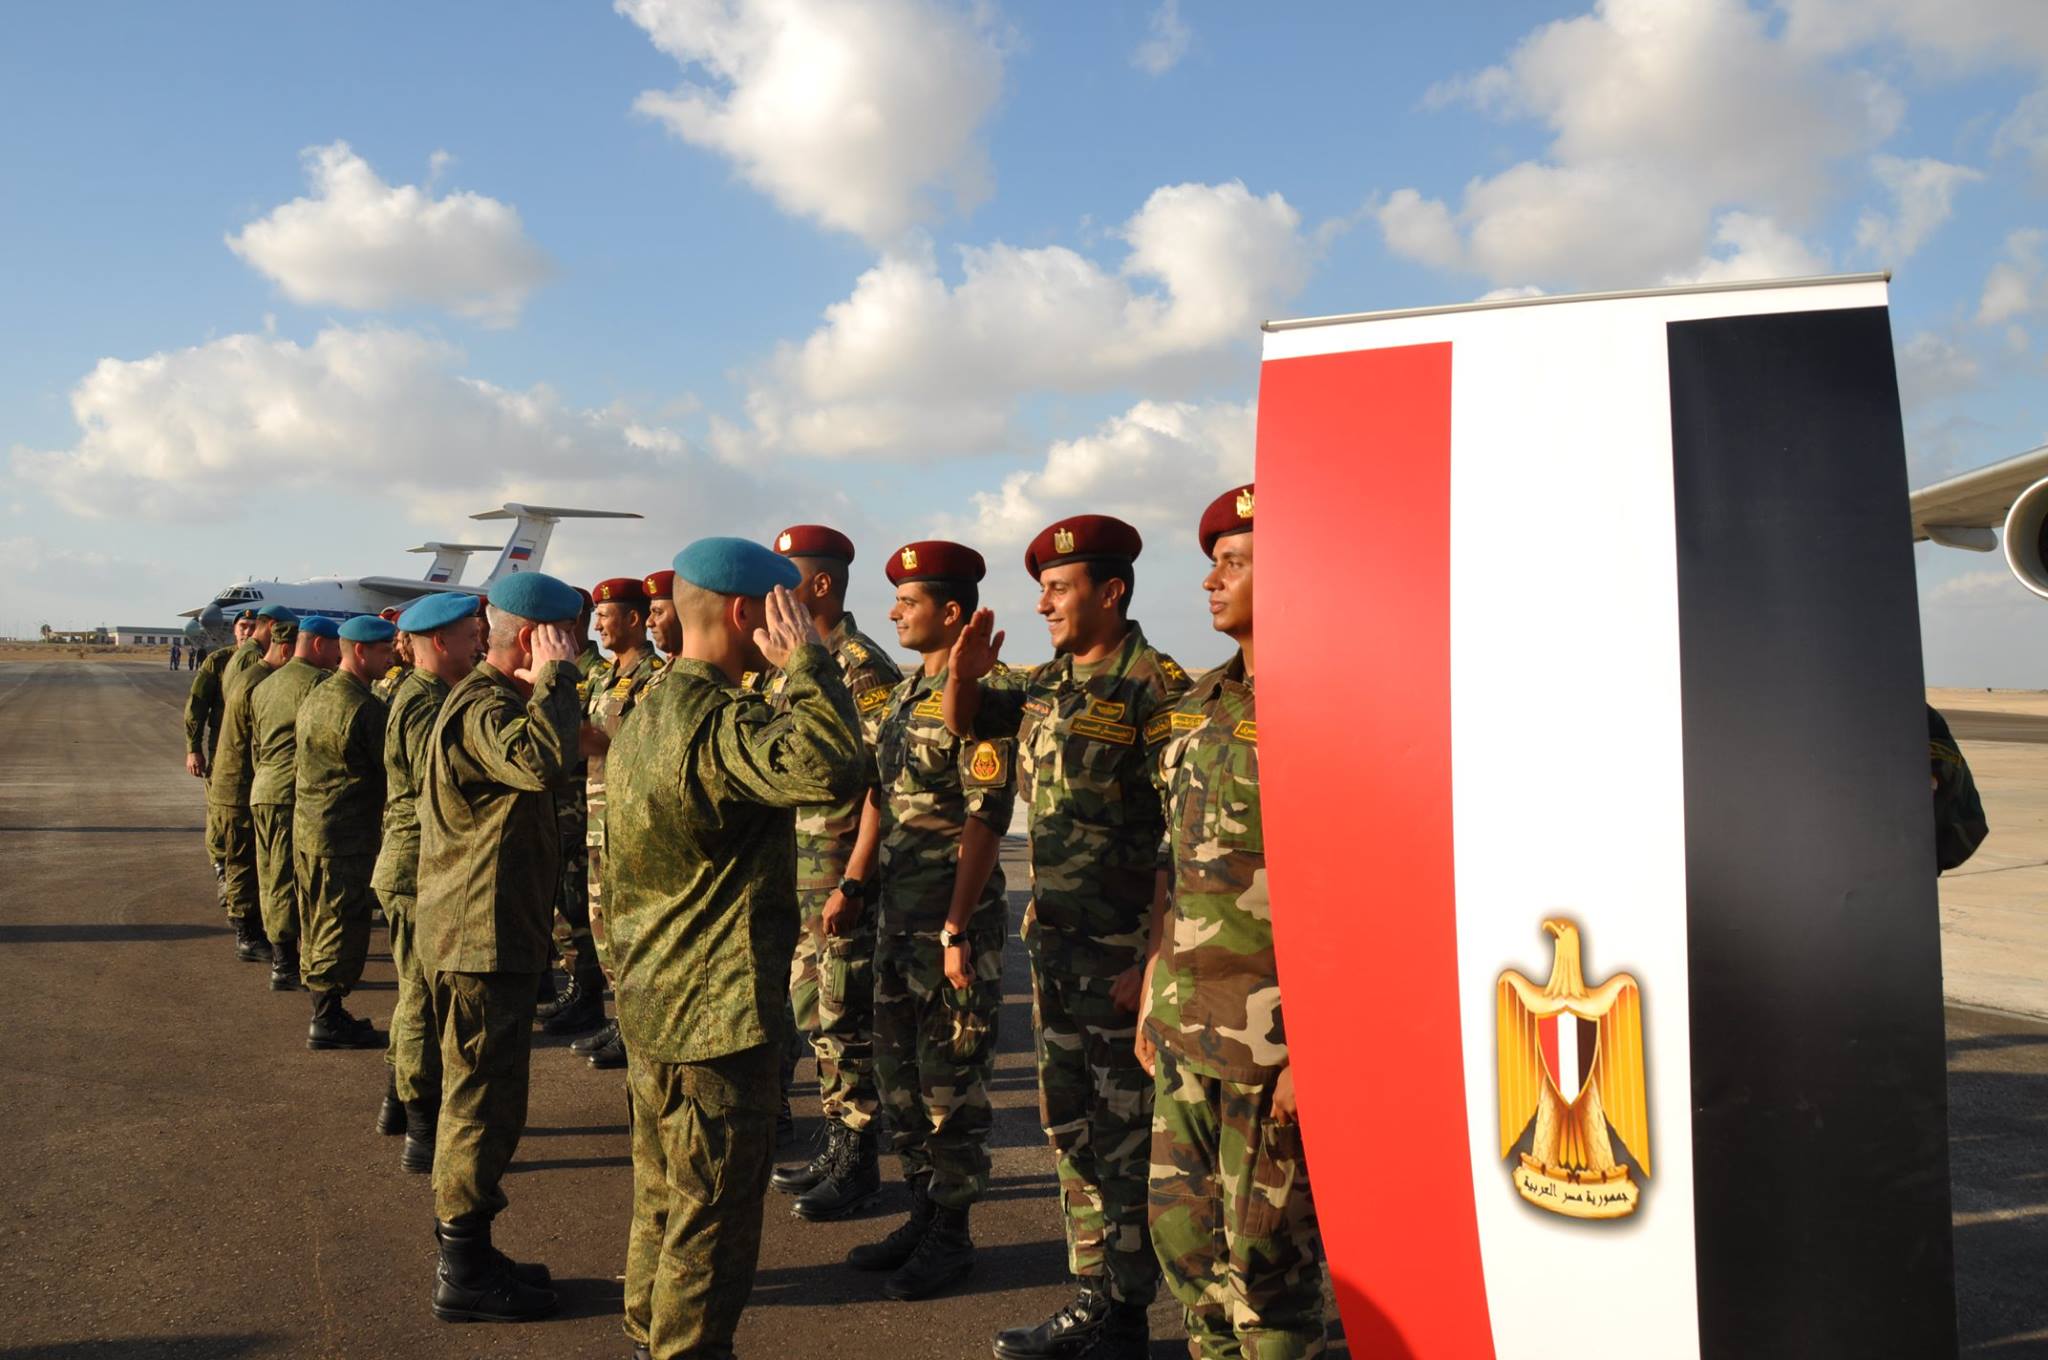 مناوارت عسكرية مشتركة بين مصر وروسيا بعنوان "حماة الصداقة-2017"